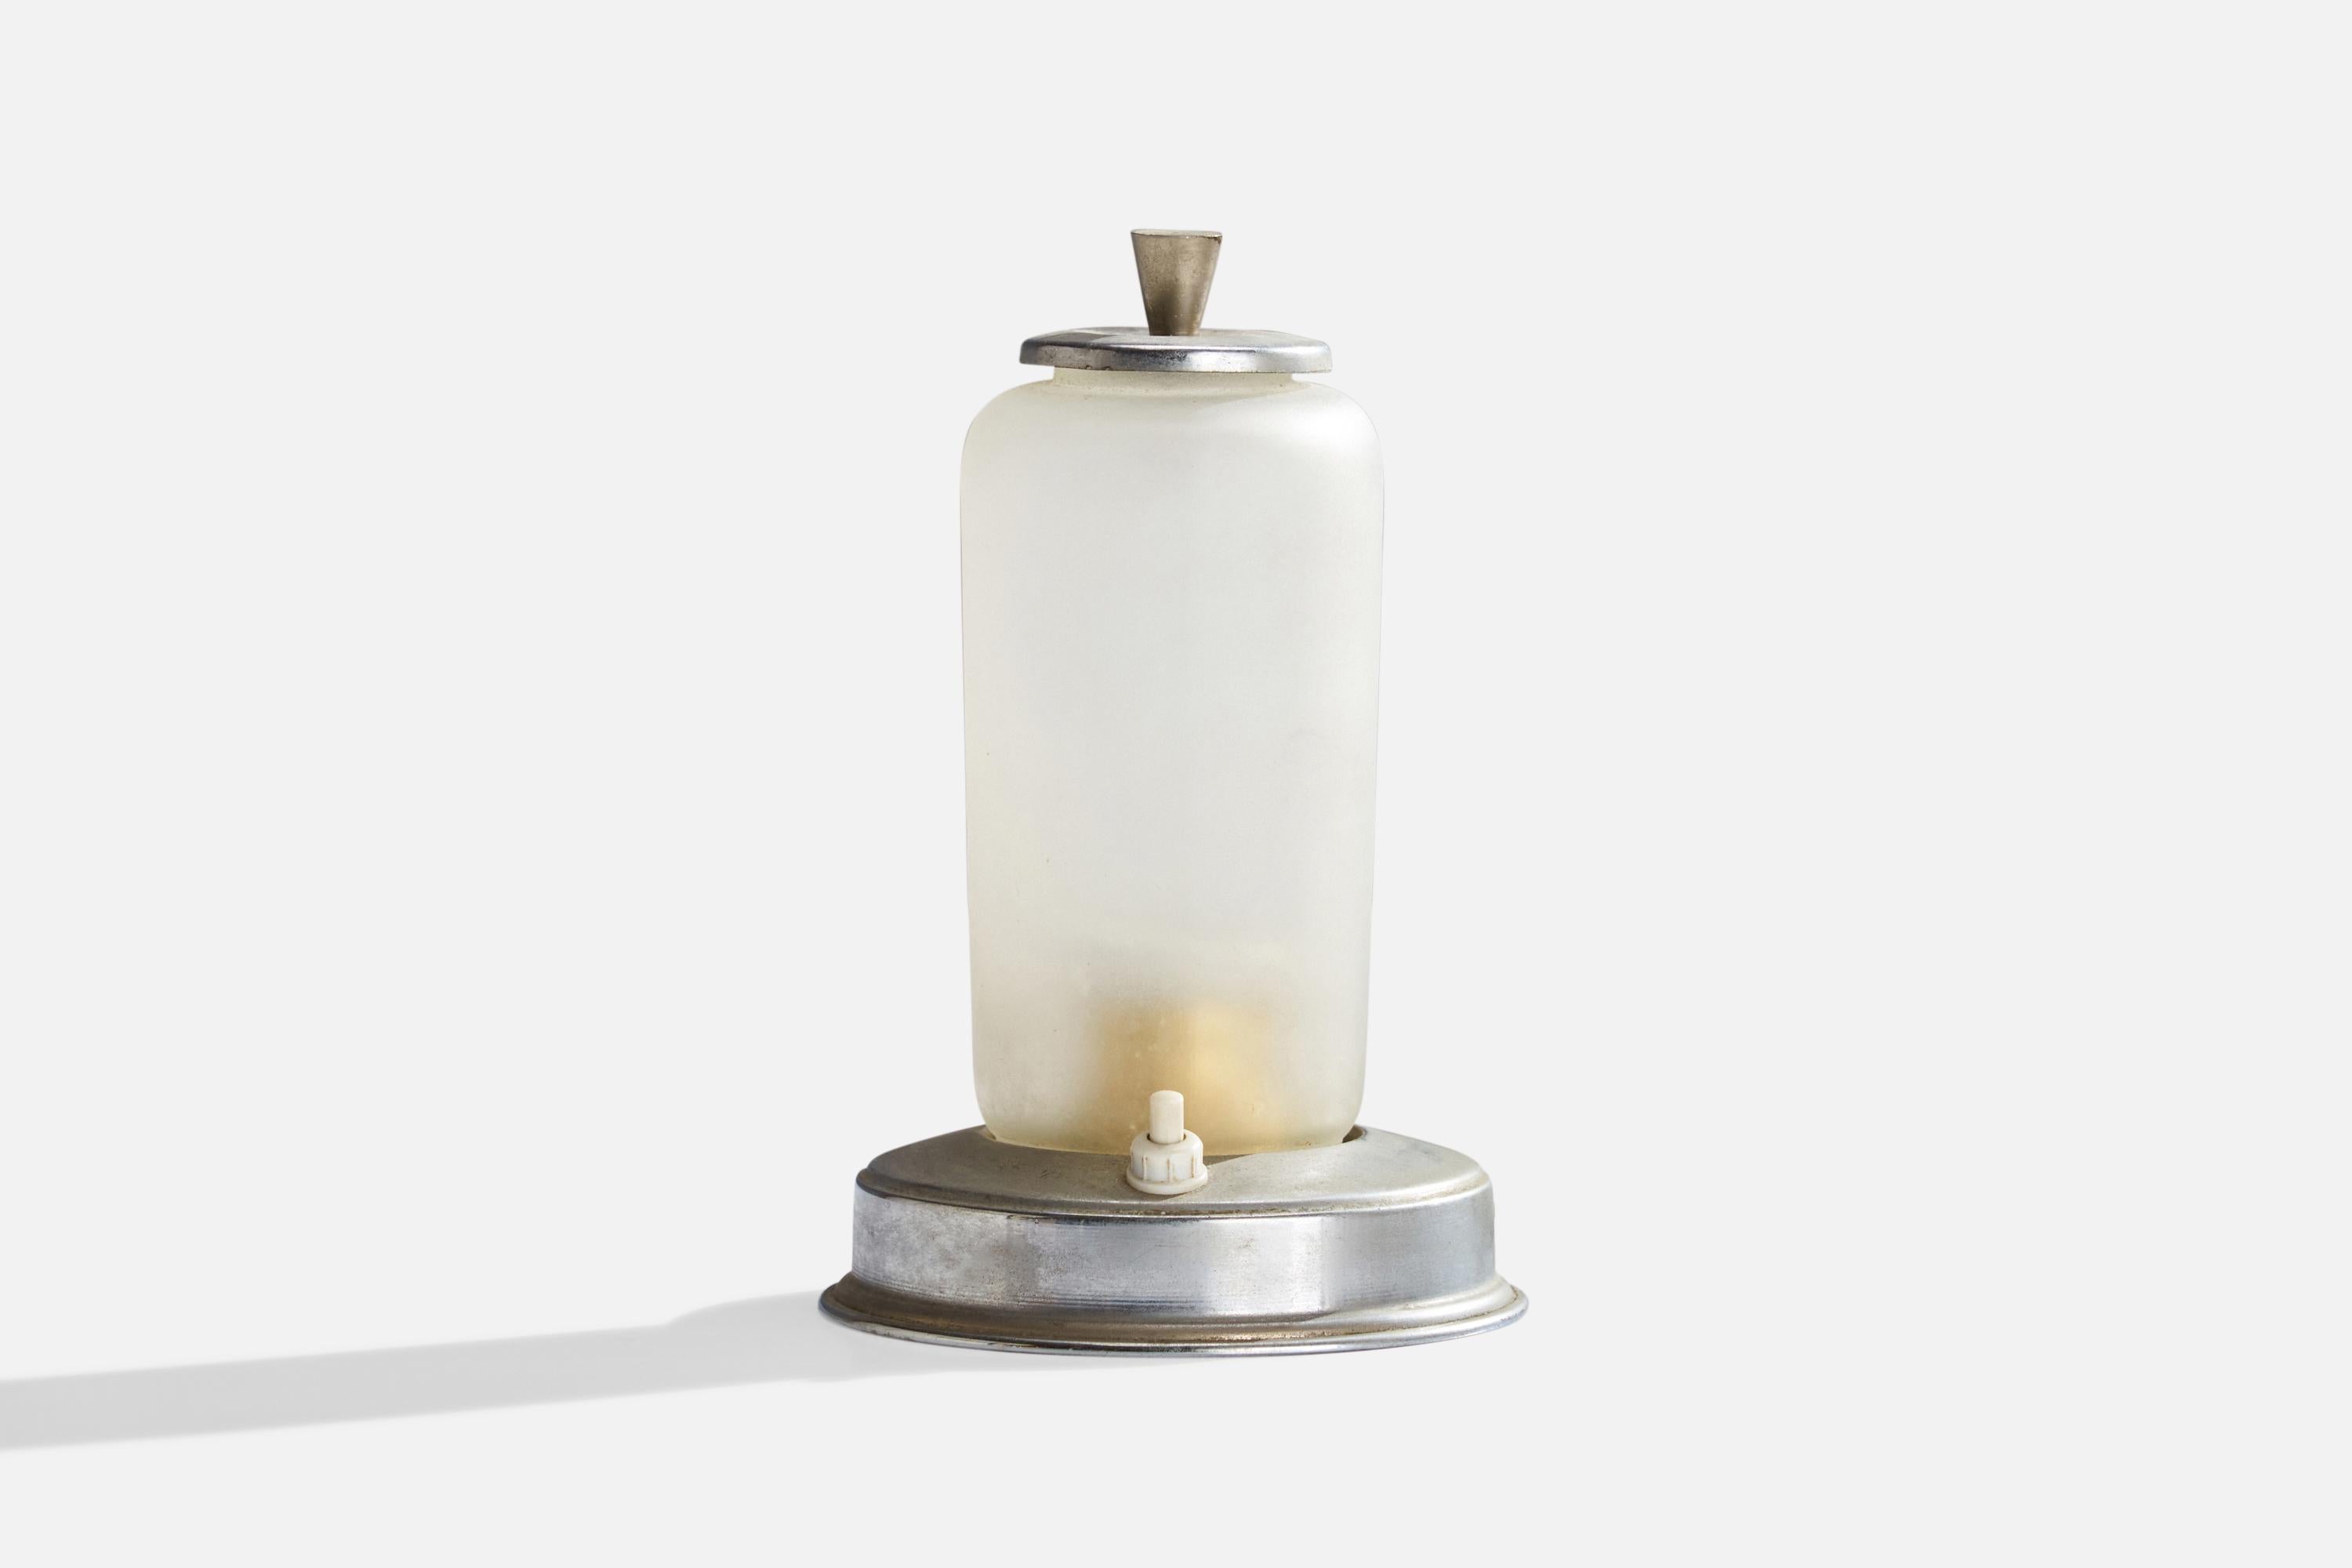 Lampe de table en verre opalin et nickel, conçue et produite en Italie, C.C.

Dimensions globales (pouces) : 7.25